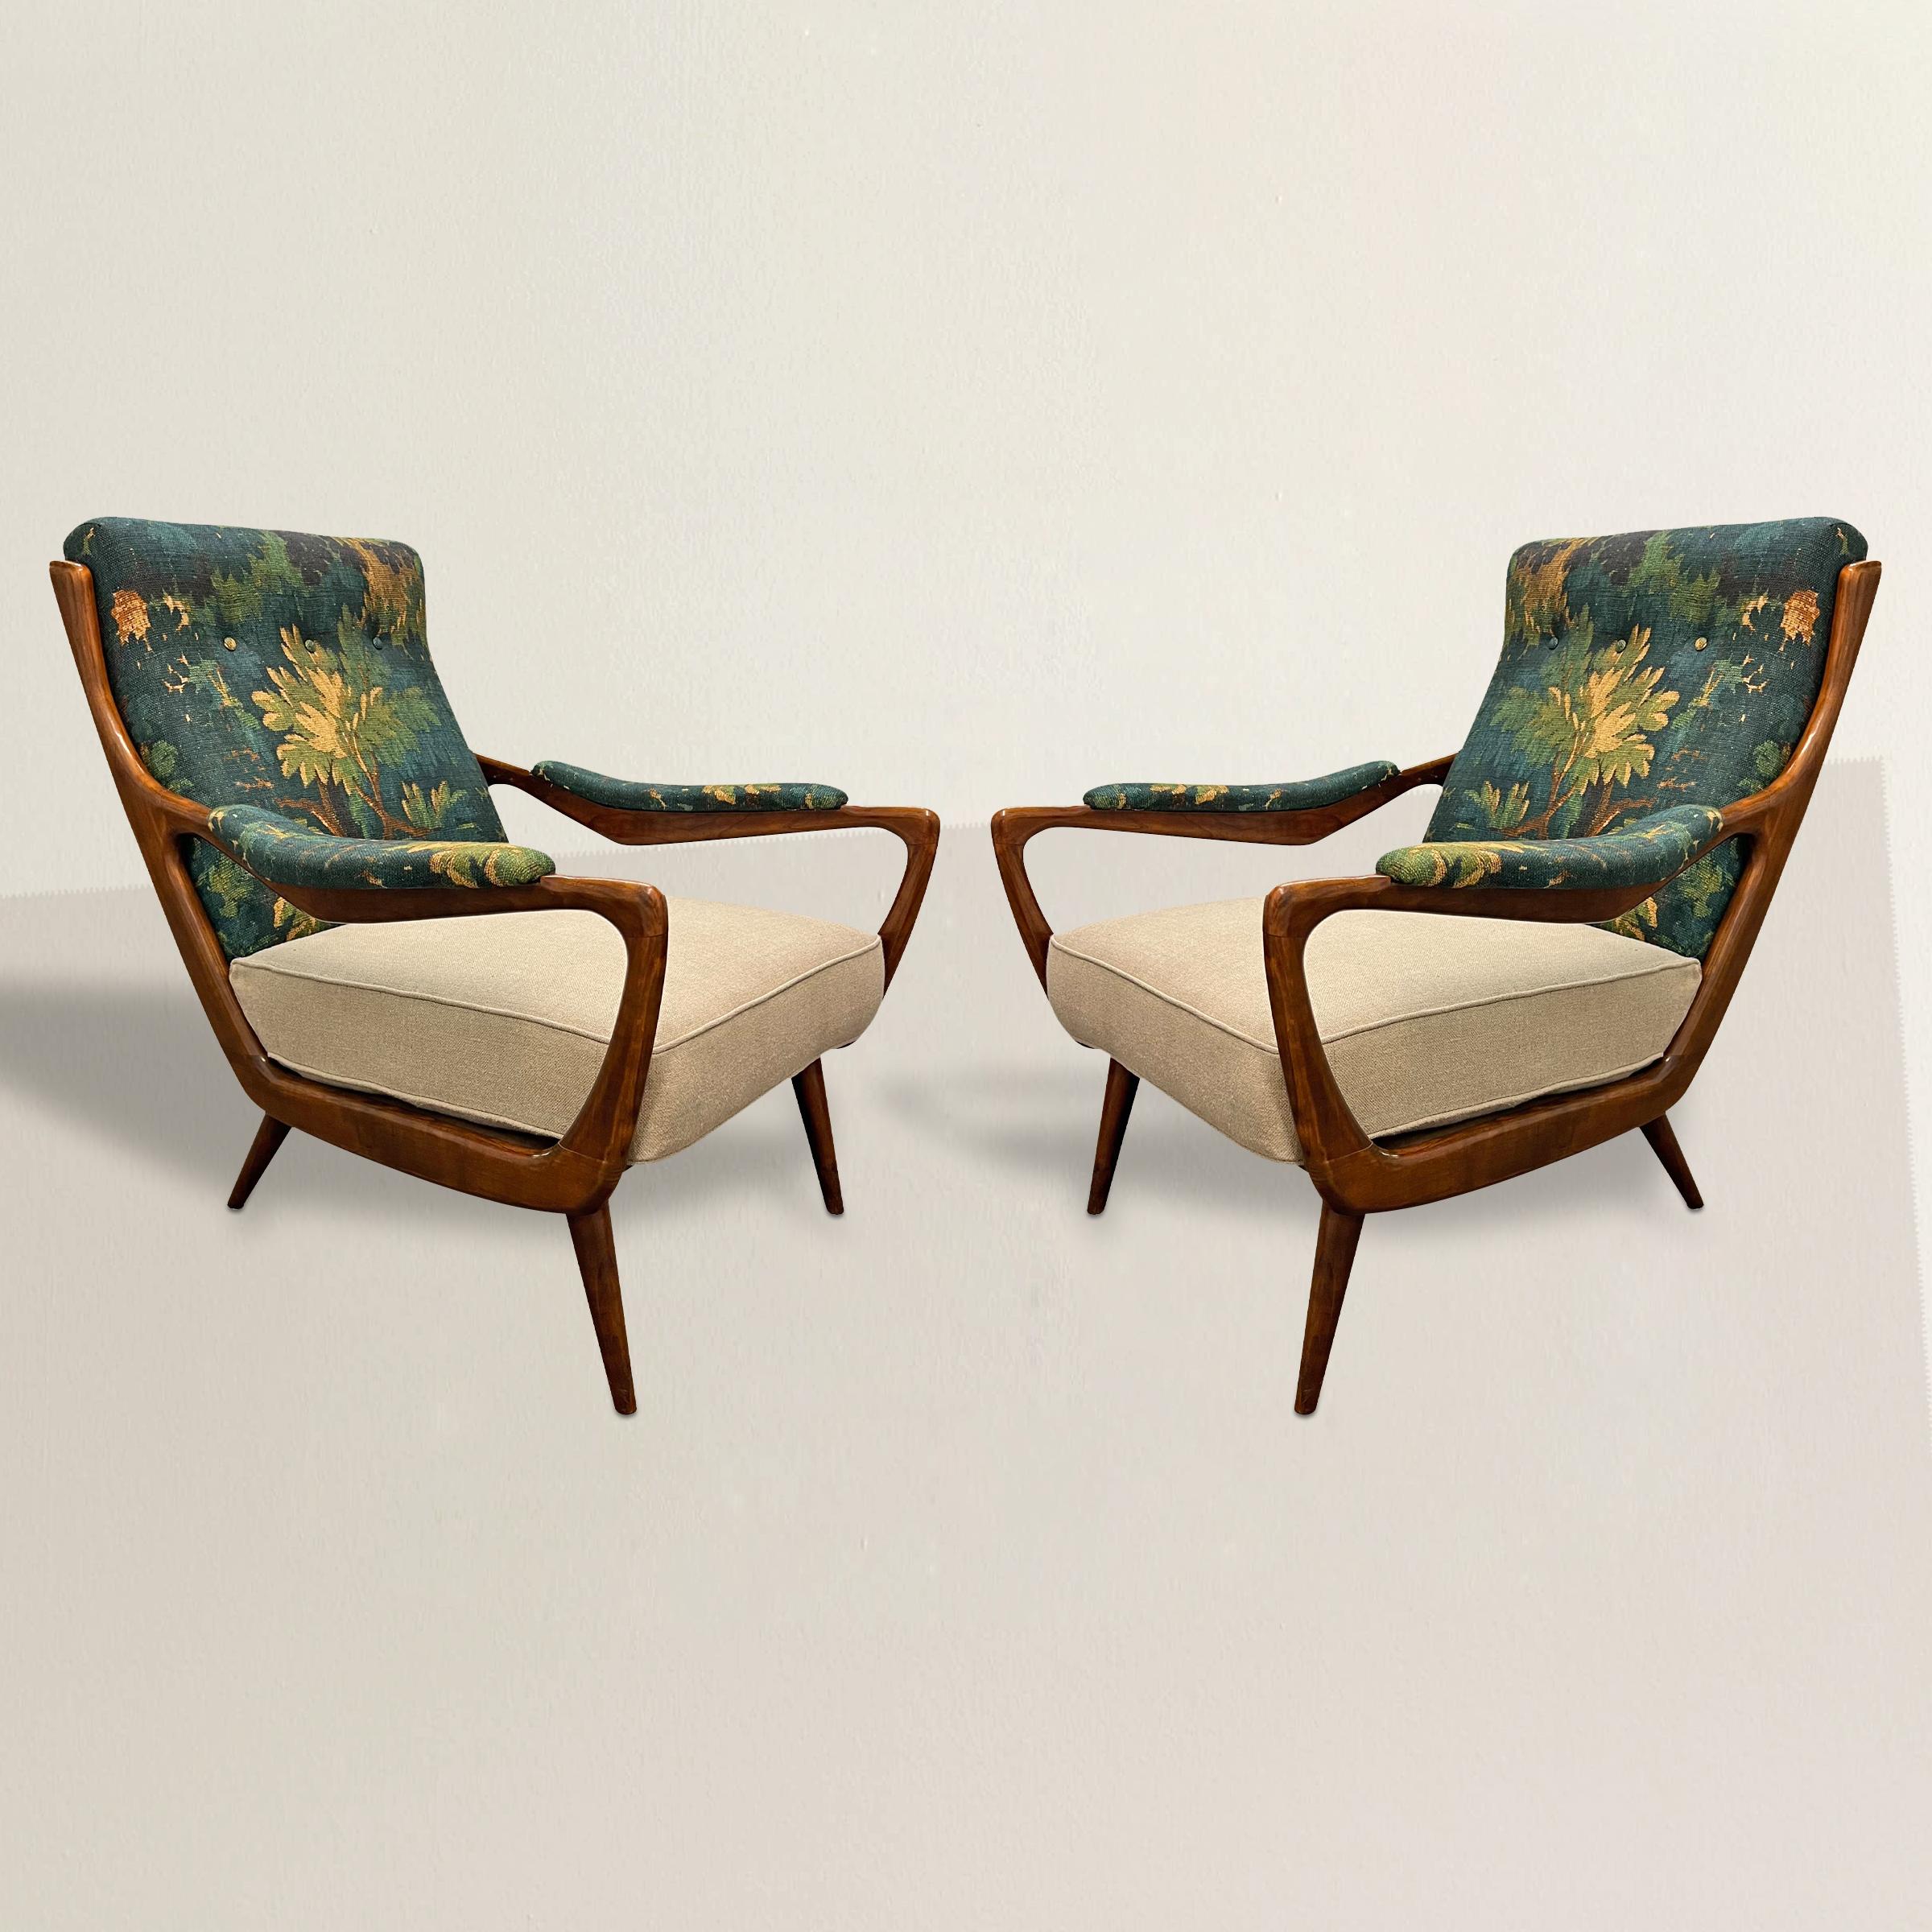 Dieses Paar dänischer Loungesessel aus den 1950er Jahren, eine harmonische Mischung aus Eleganz der Jahrhundertmitte und zeitgenössischem Stil, wertet Ihre Einrichtung auf. Die schicken Holzrahmen, Sinnbild des dänischen modernen Designs, stehen für